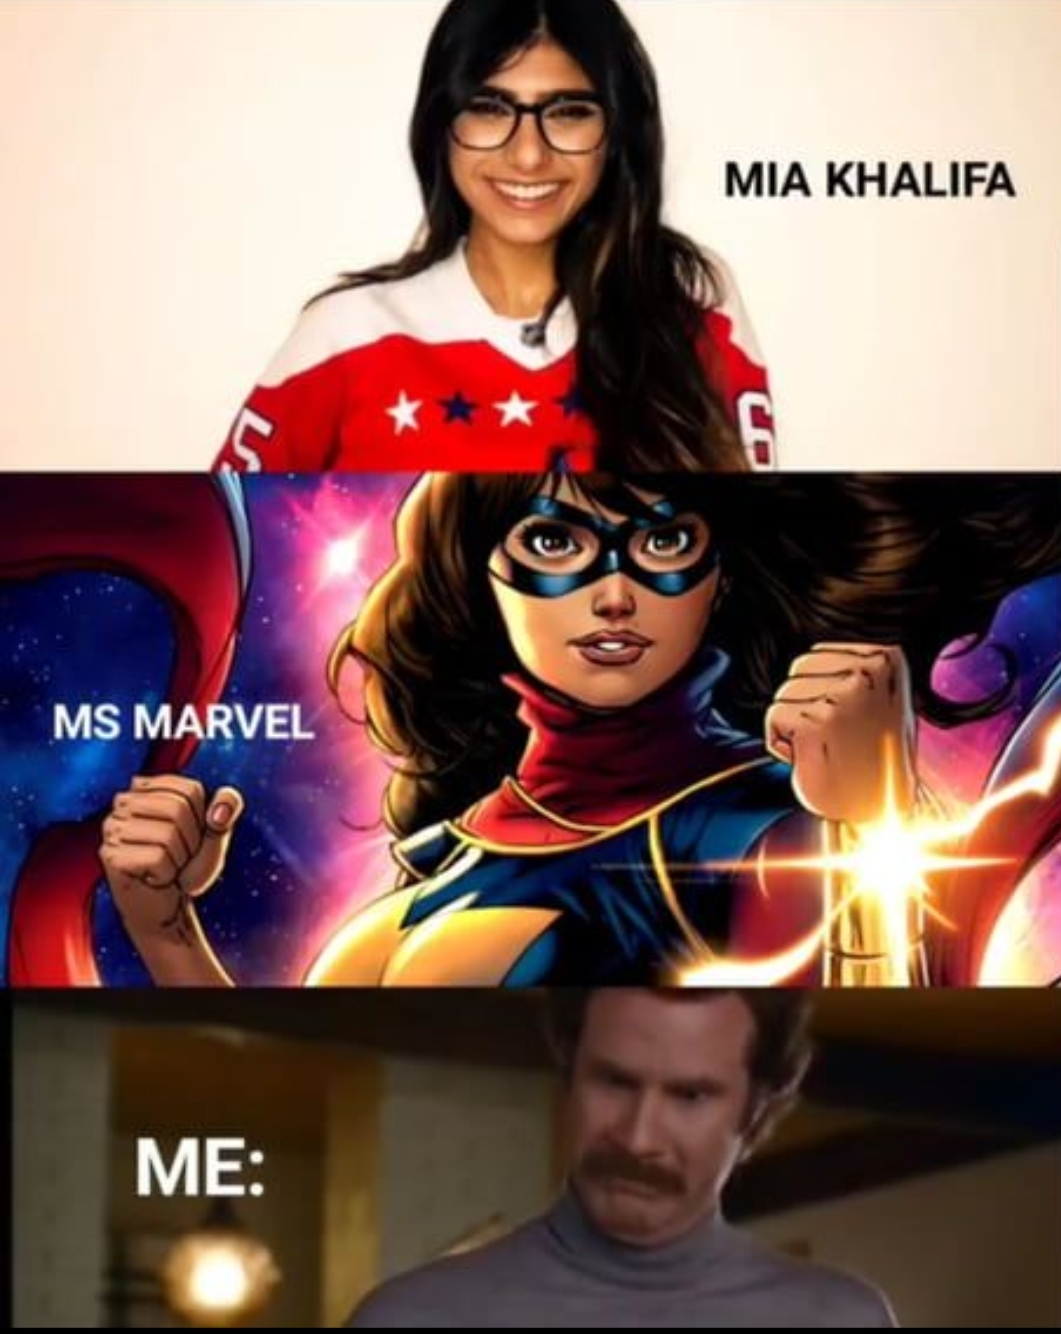 1061px x 1334px - Mia Khalifa as Ms Marvel? | Fandom